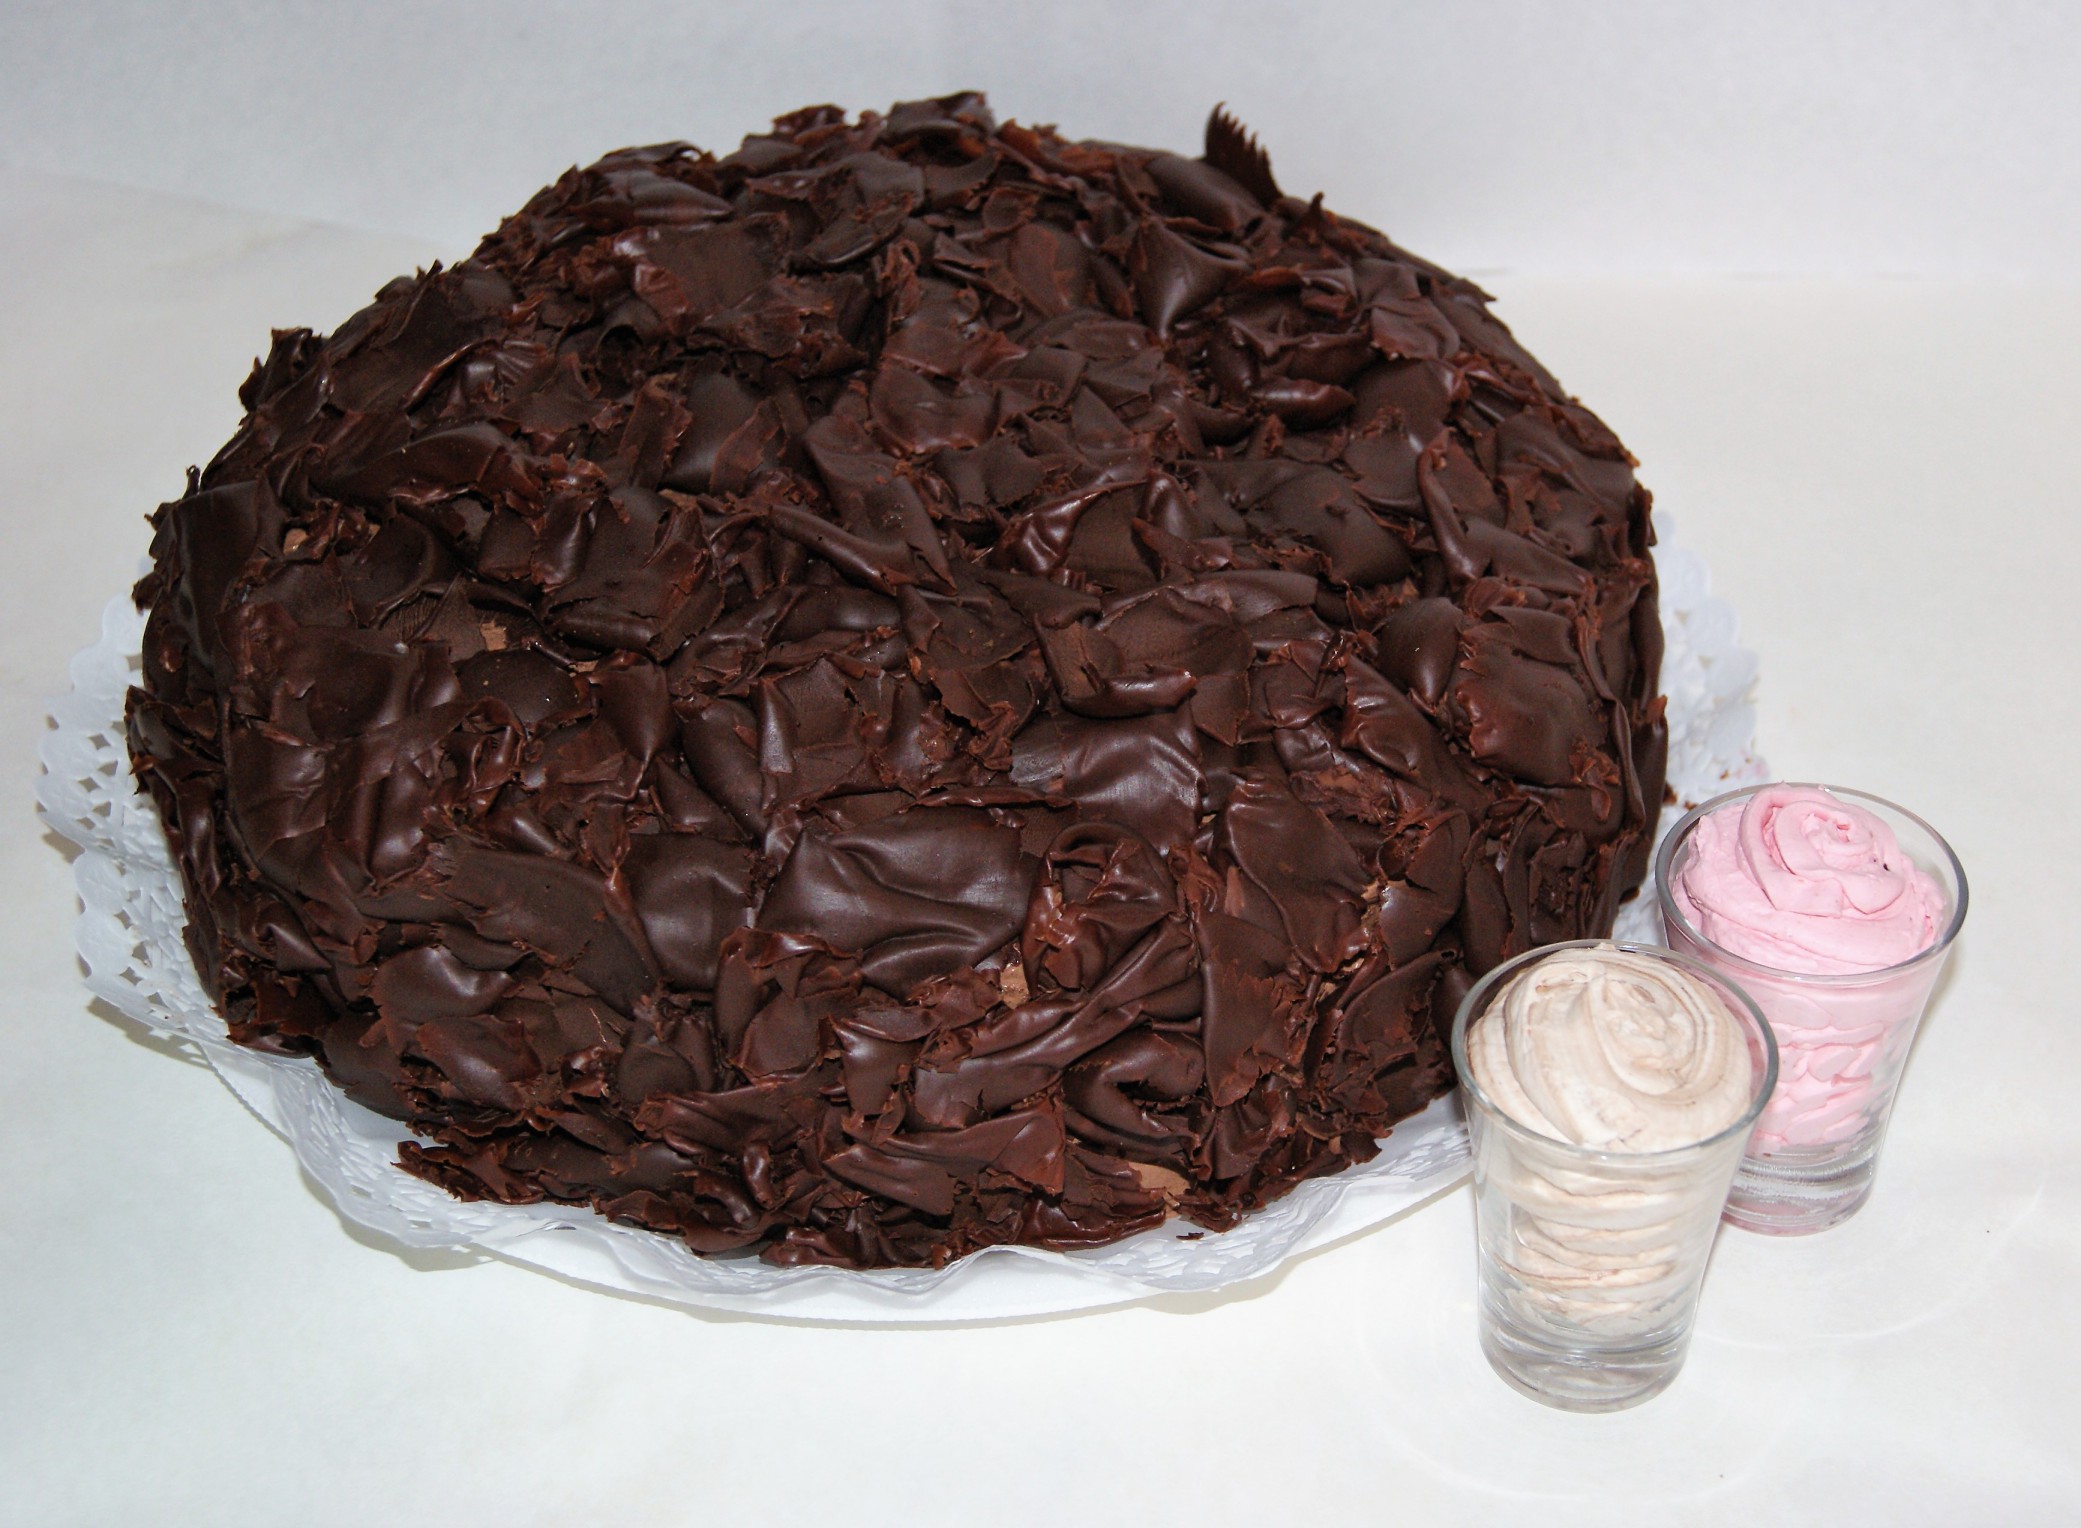 torta de bizcochuelo de chocolate rellena de mermelada de frambuesa,crema de frutilla y crema granizada